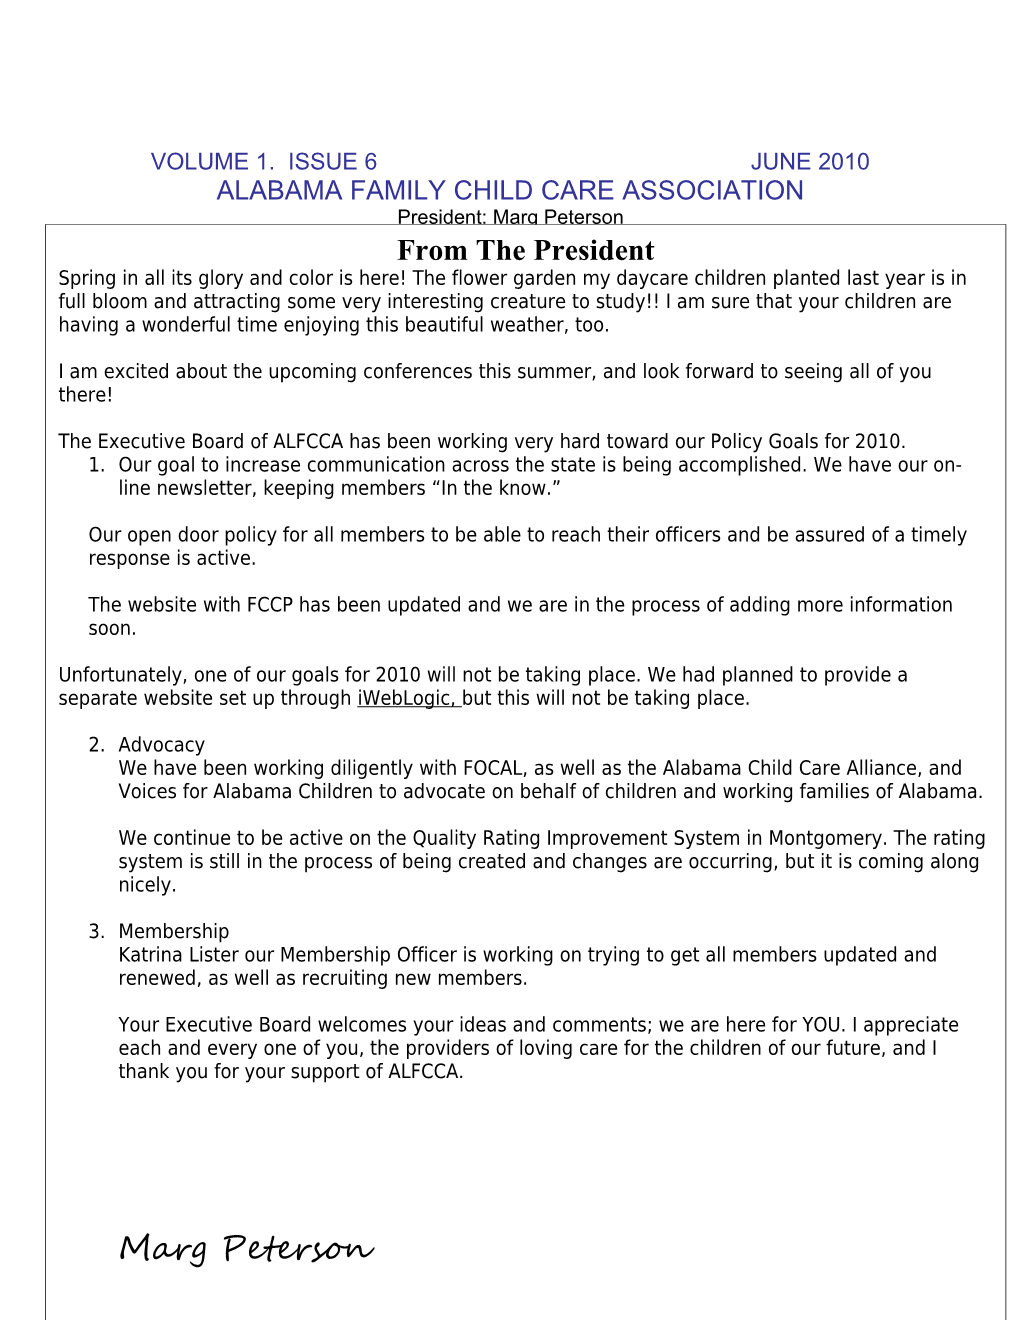 Alabama Family Child Care Association